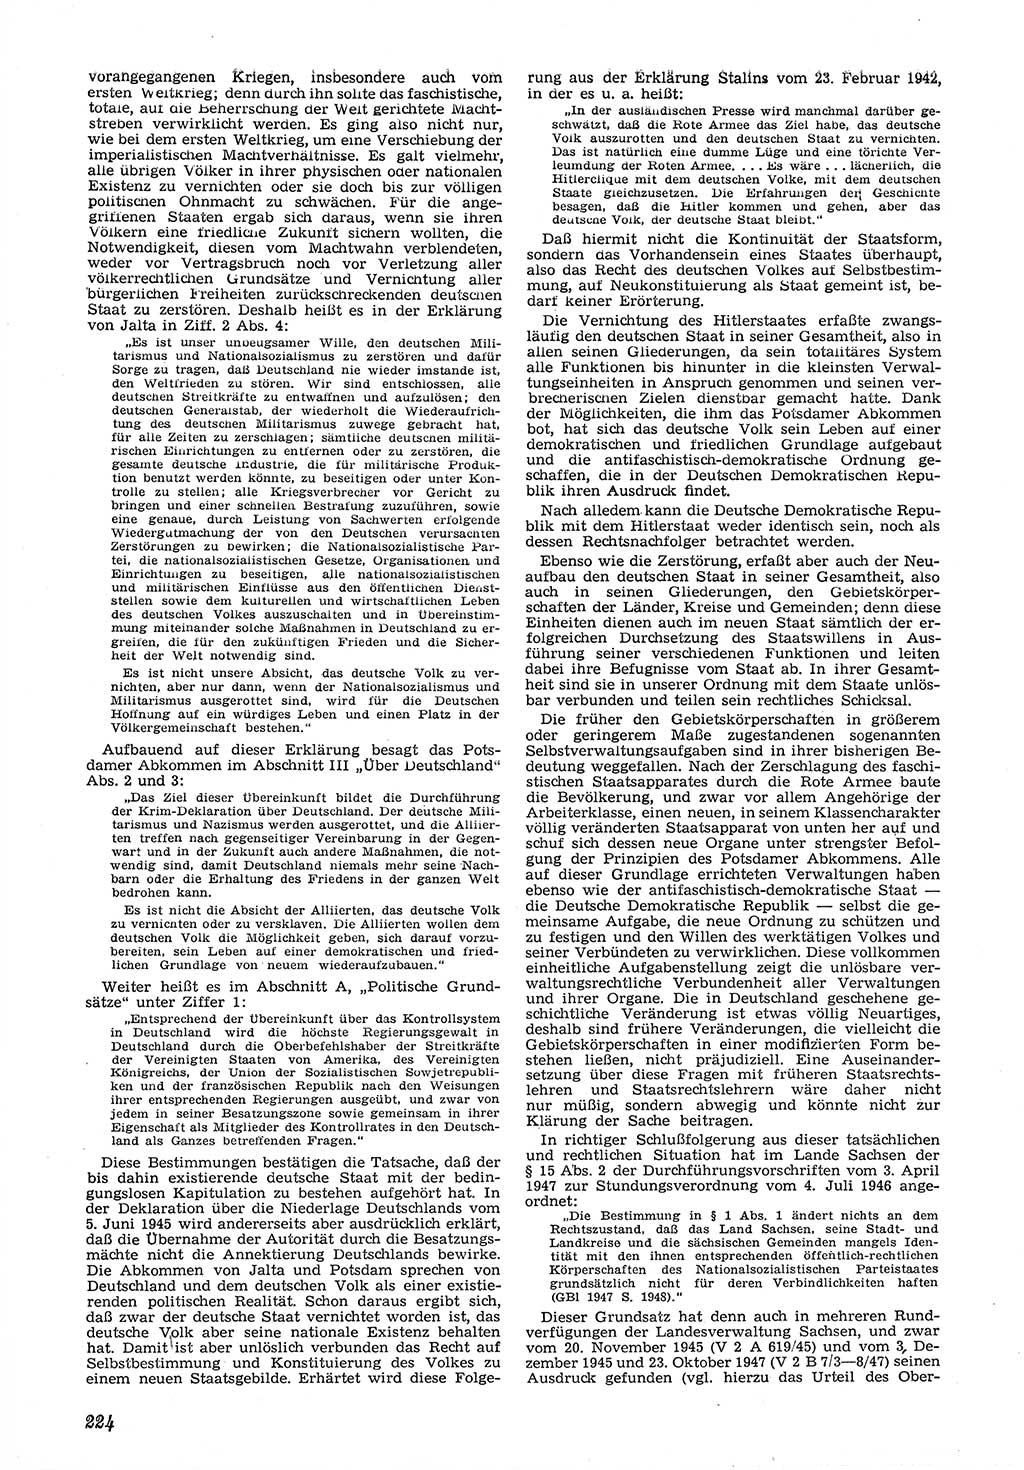 Neue Justiz (NJ), Zeitschrift für Recht und Rechtswissenschaft [Deutsche Demokratische Republik (DDR)], 6. Jahrgang 1952, Seite 224 (NJ DDR 1952, S. 224)